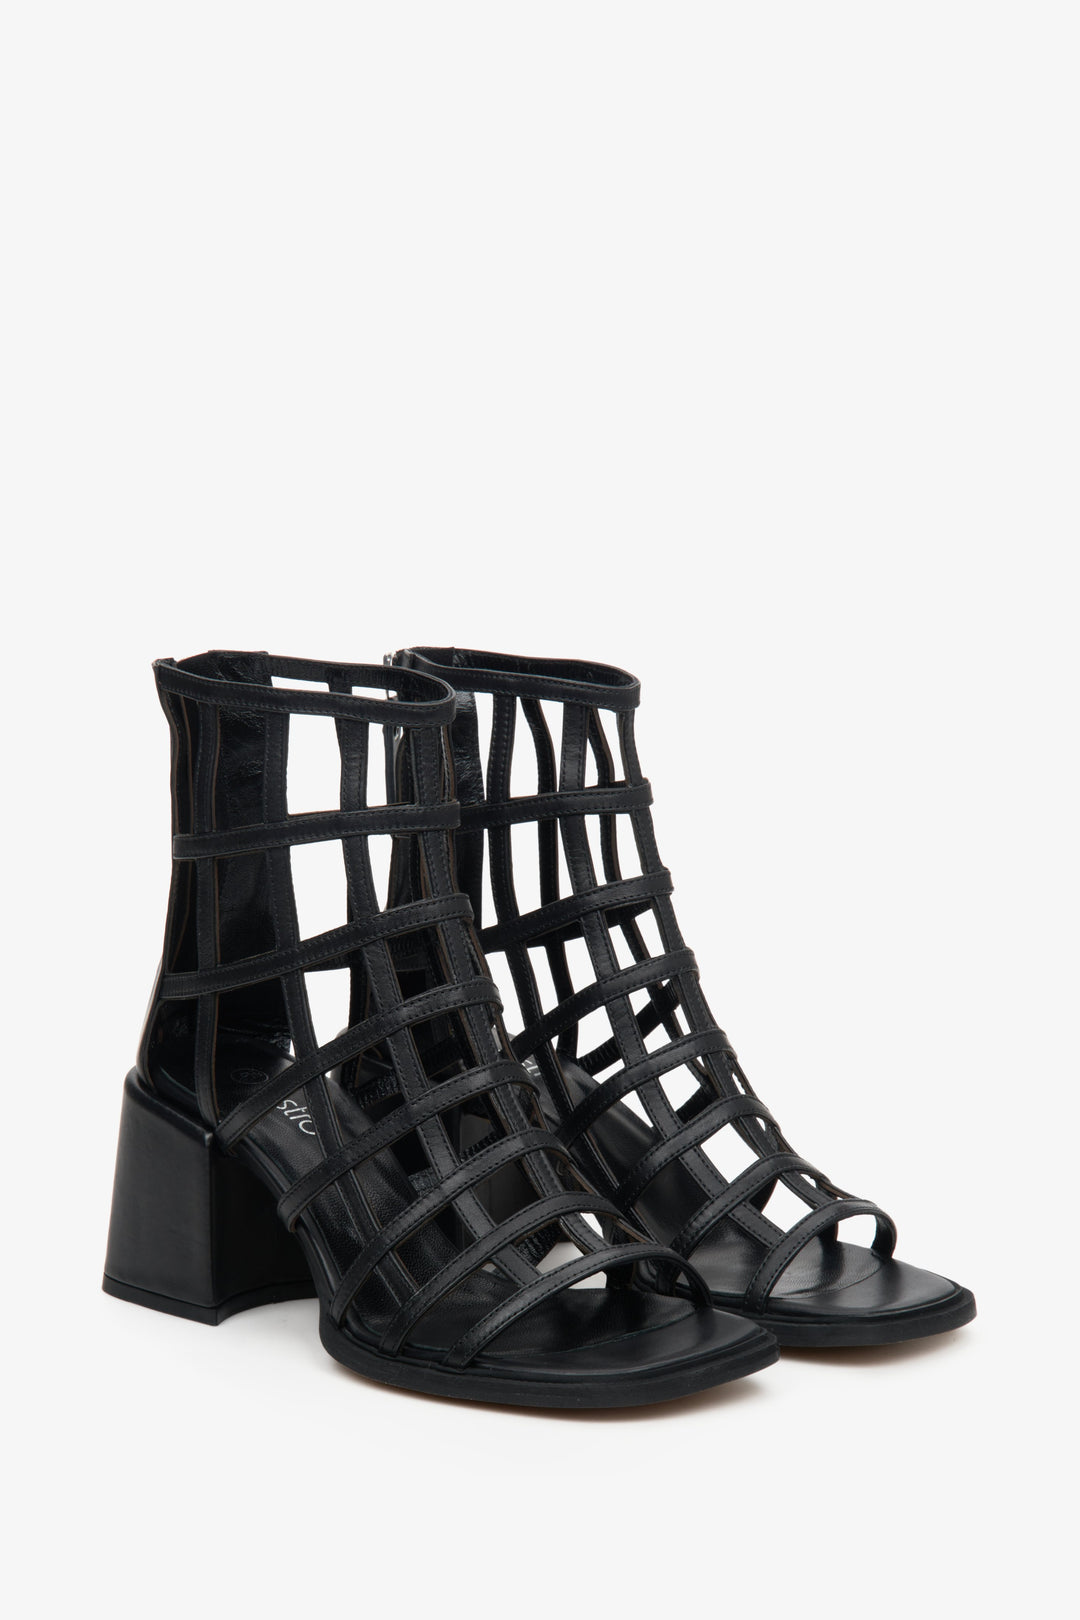 Estro's black block heel sandals made of crossed, thin straps.